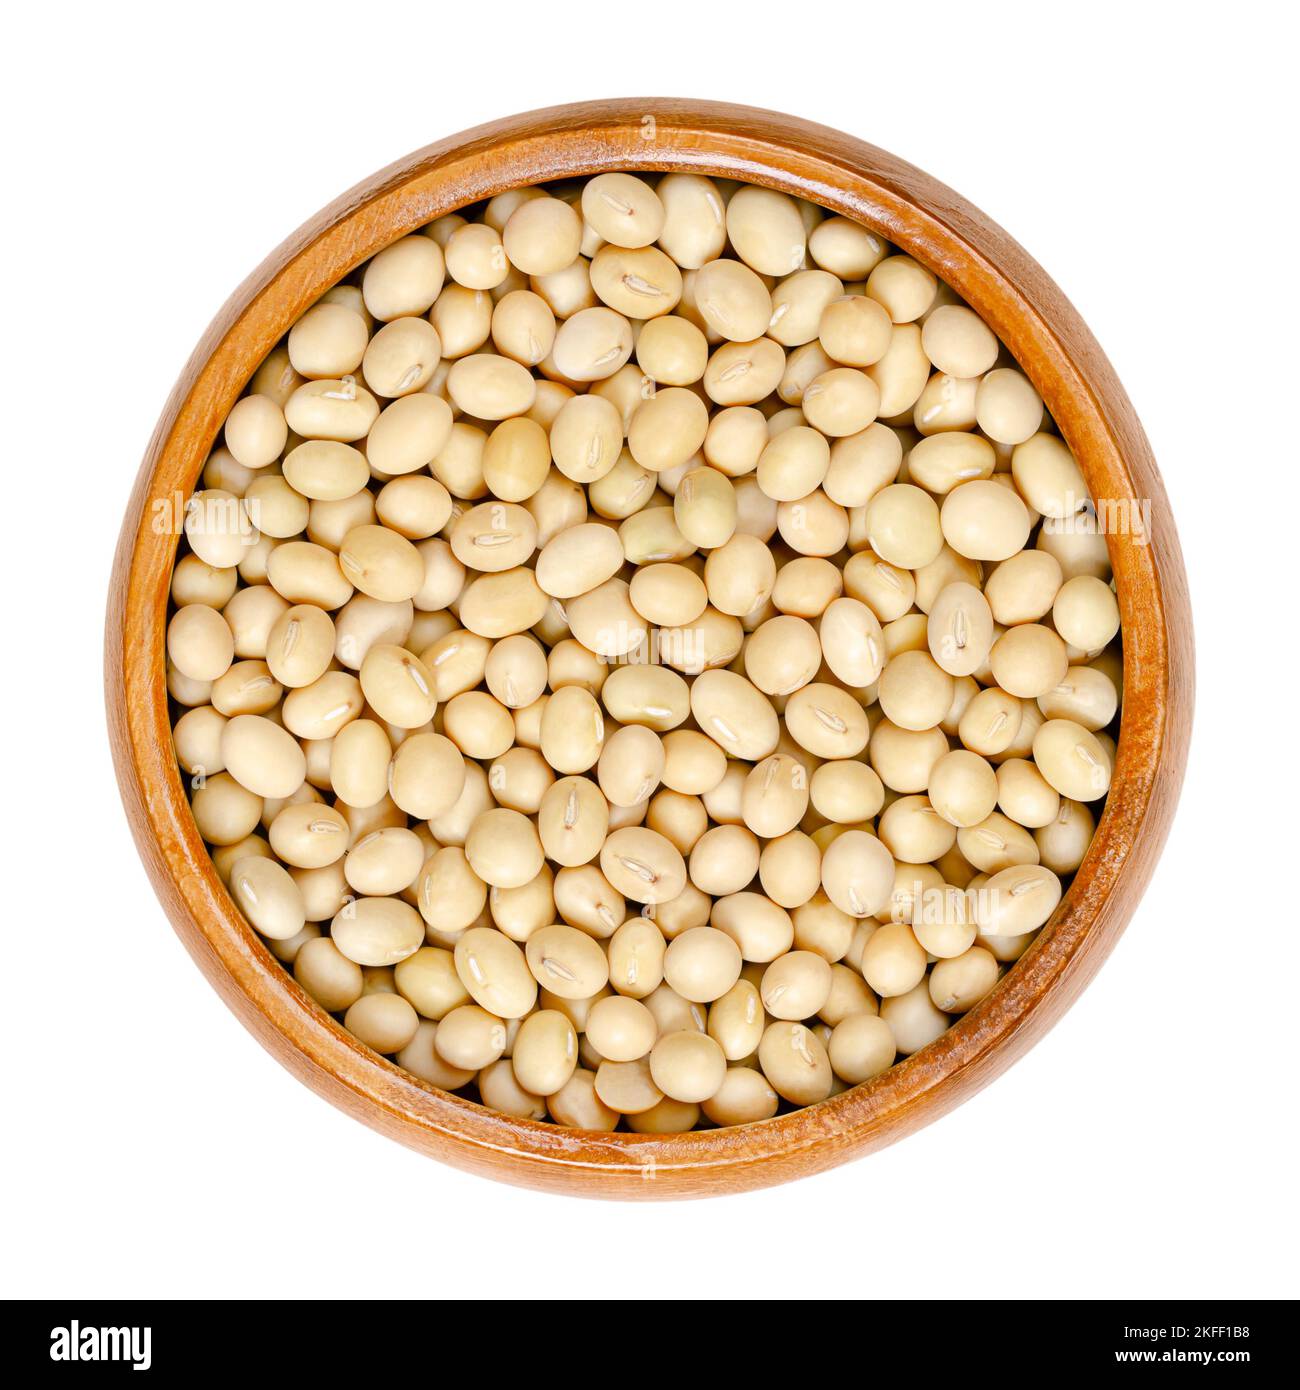 Soja cru, dans un bol en bois. Graines entières et séchées de la légumineuse et graines oléagineuses Glycine max, également connues sous le nom de soja ou soja. Banque D'Images